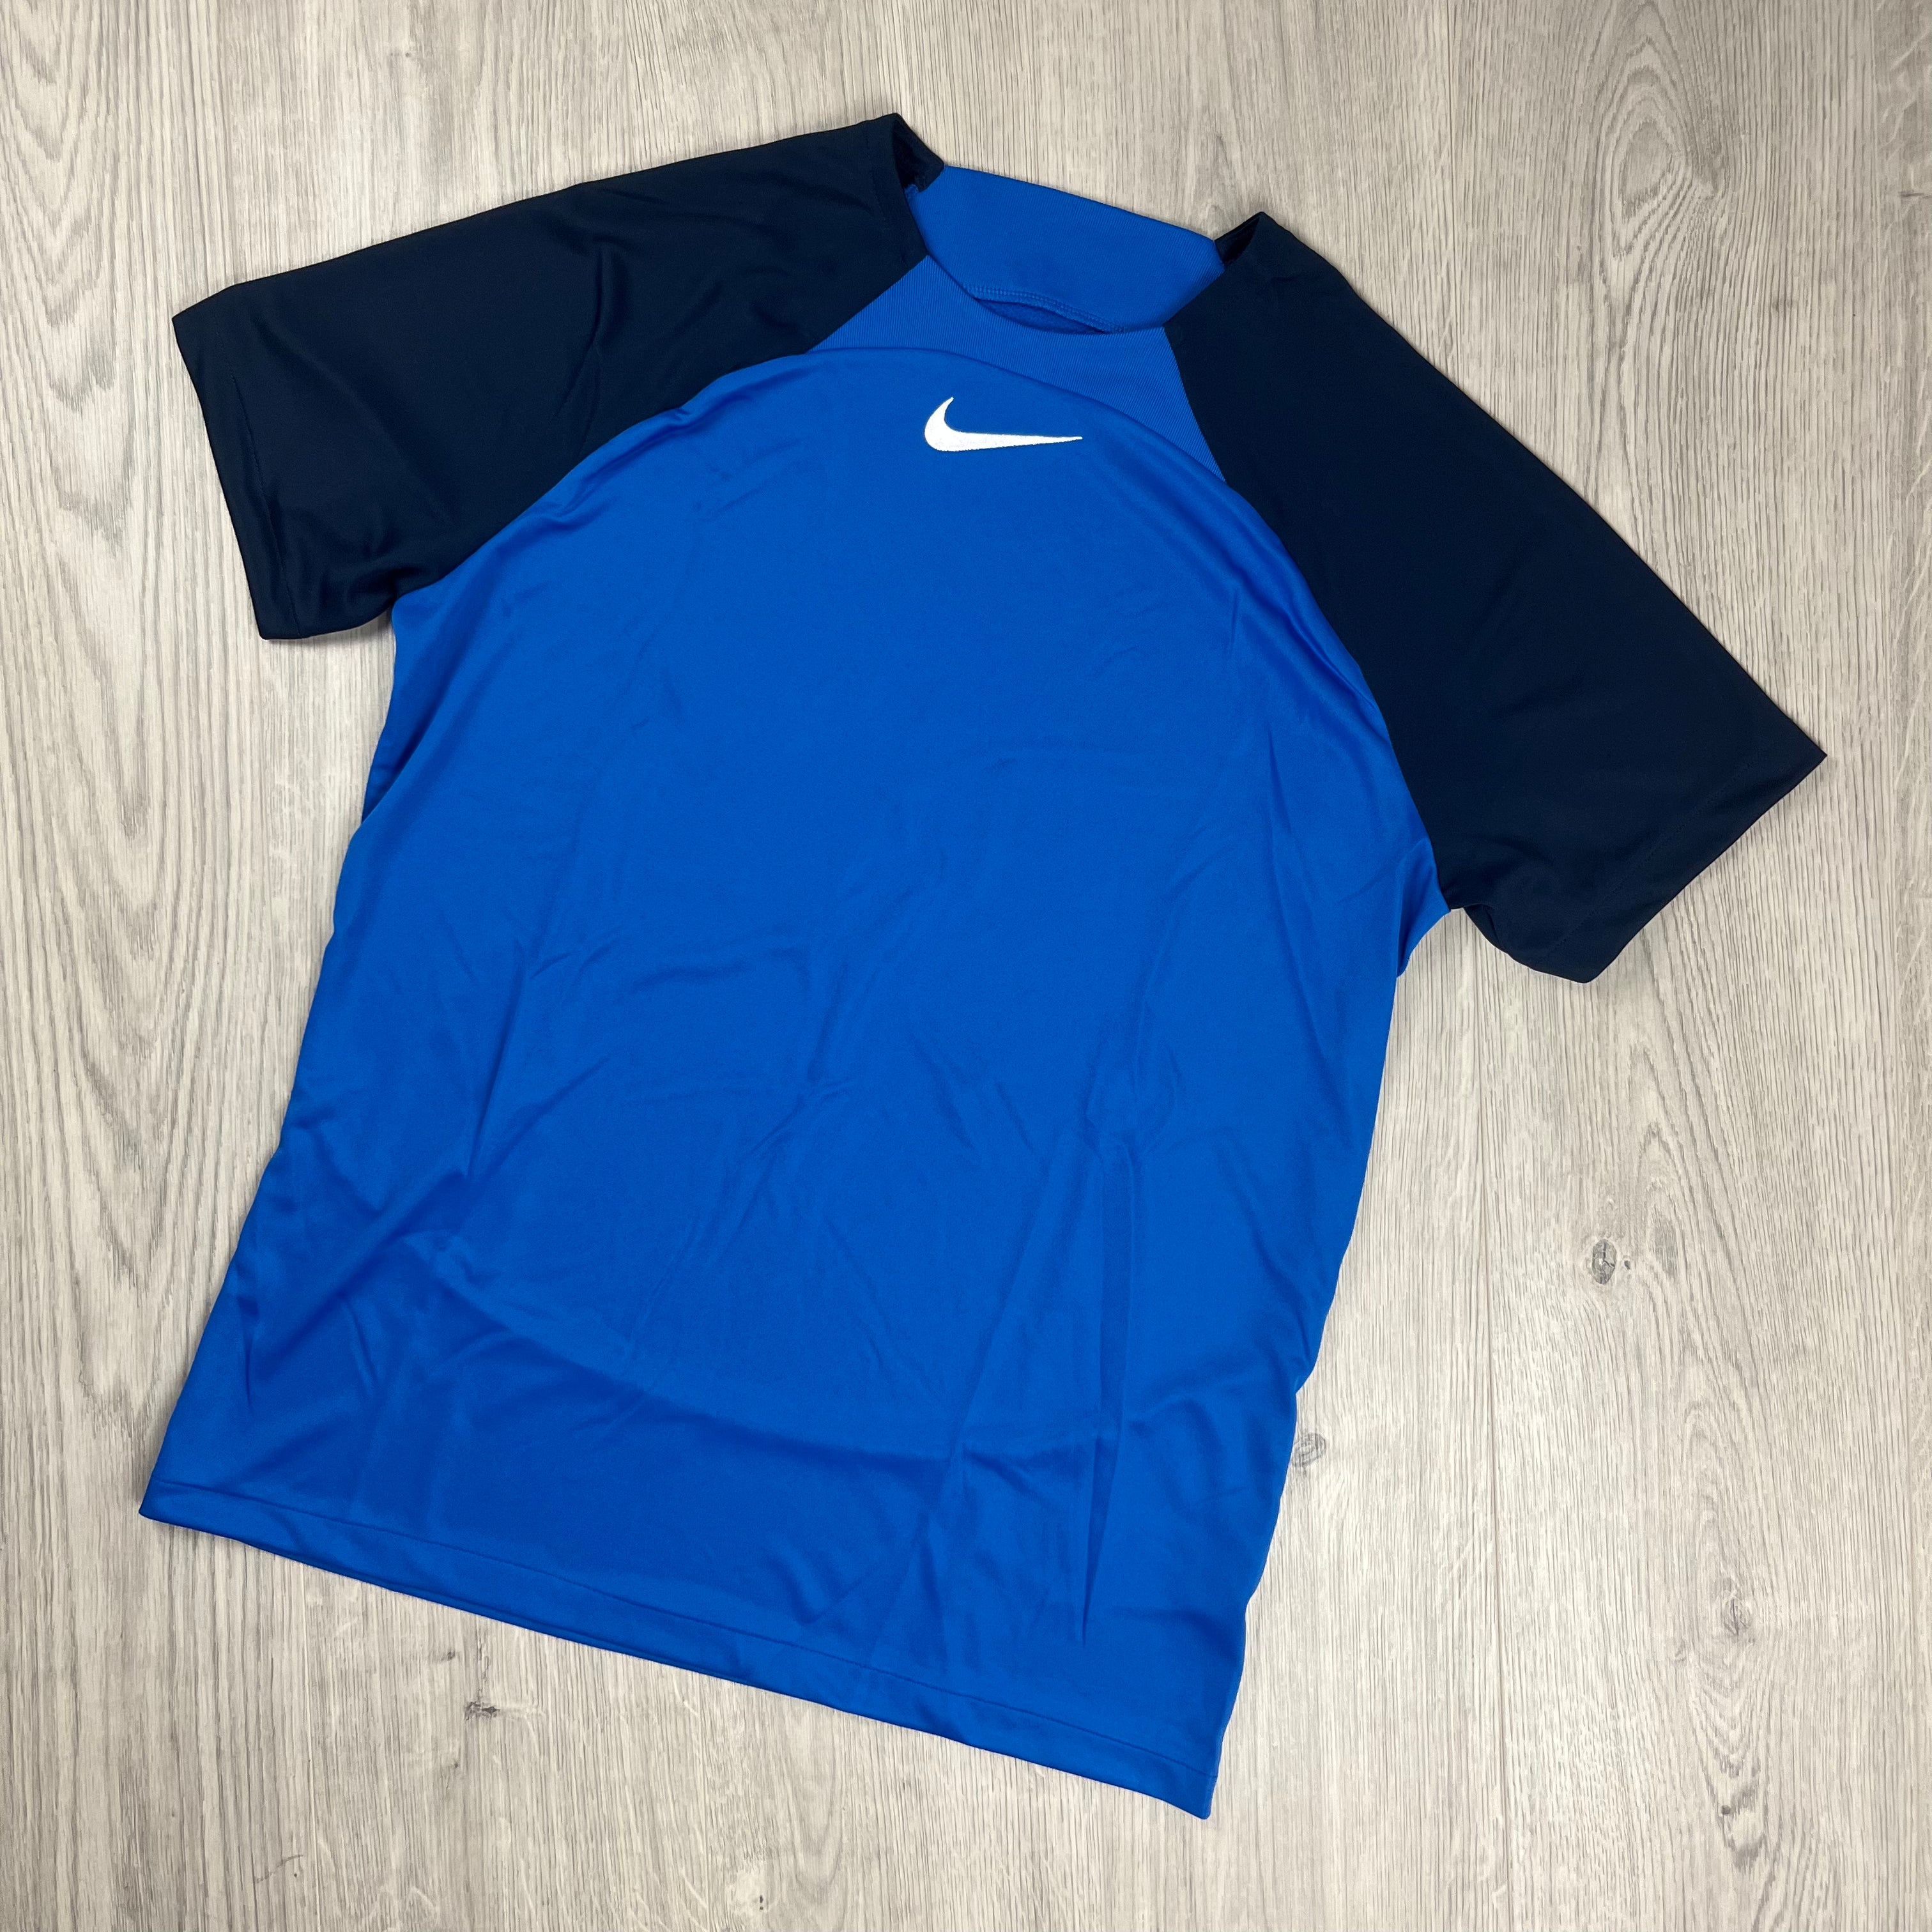 Nike Dri-Fit T-Shirt - Blue/Obsidian